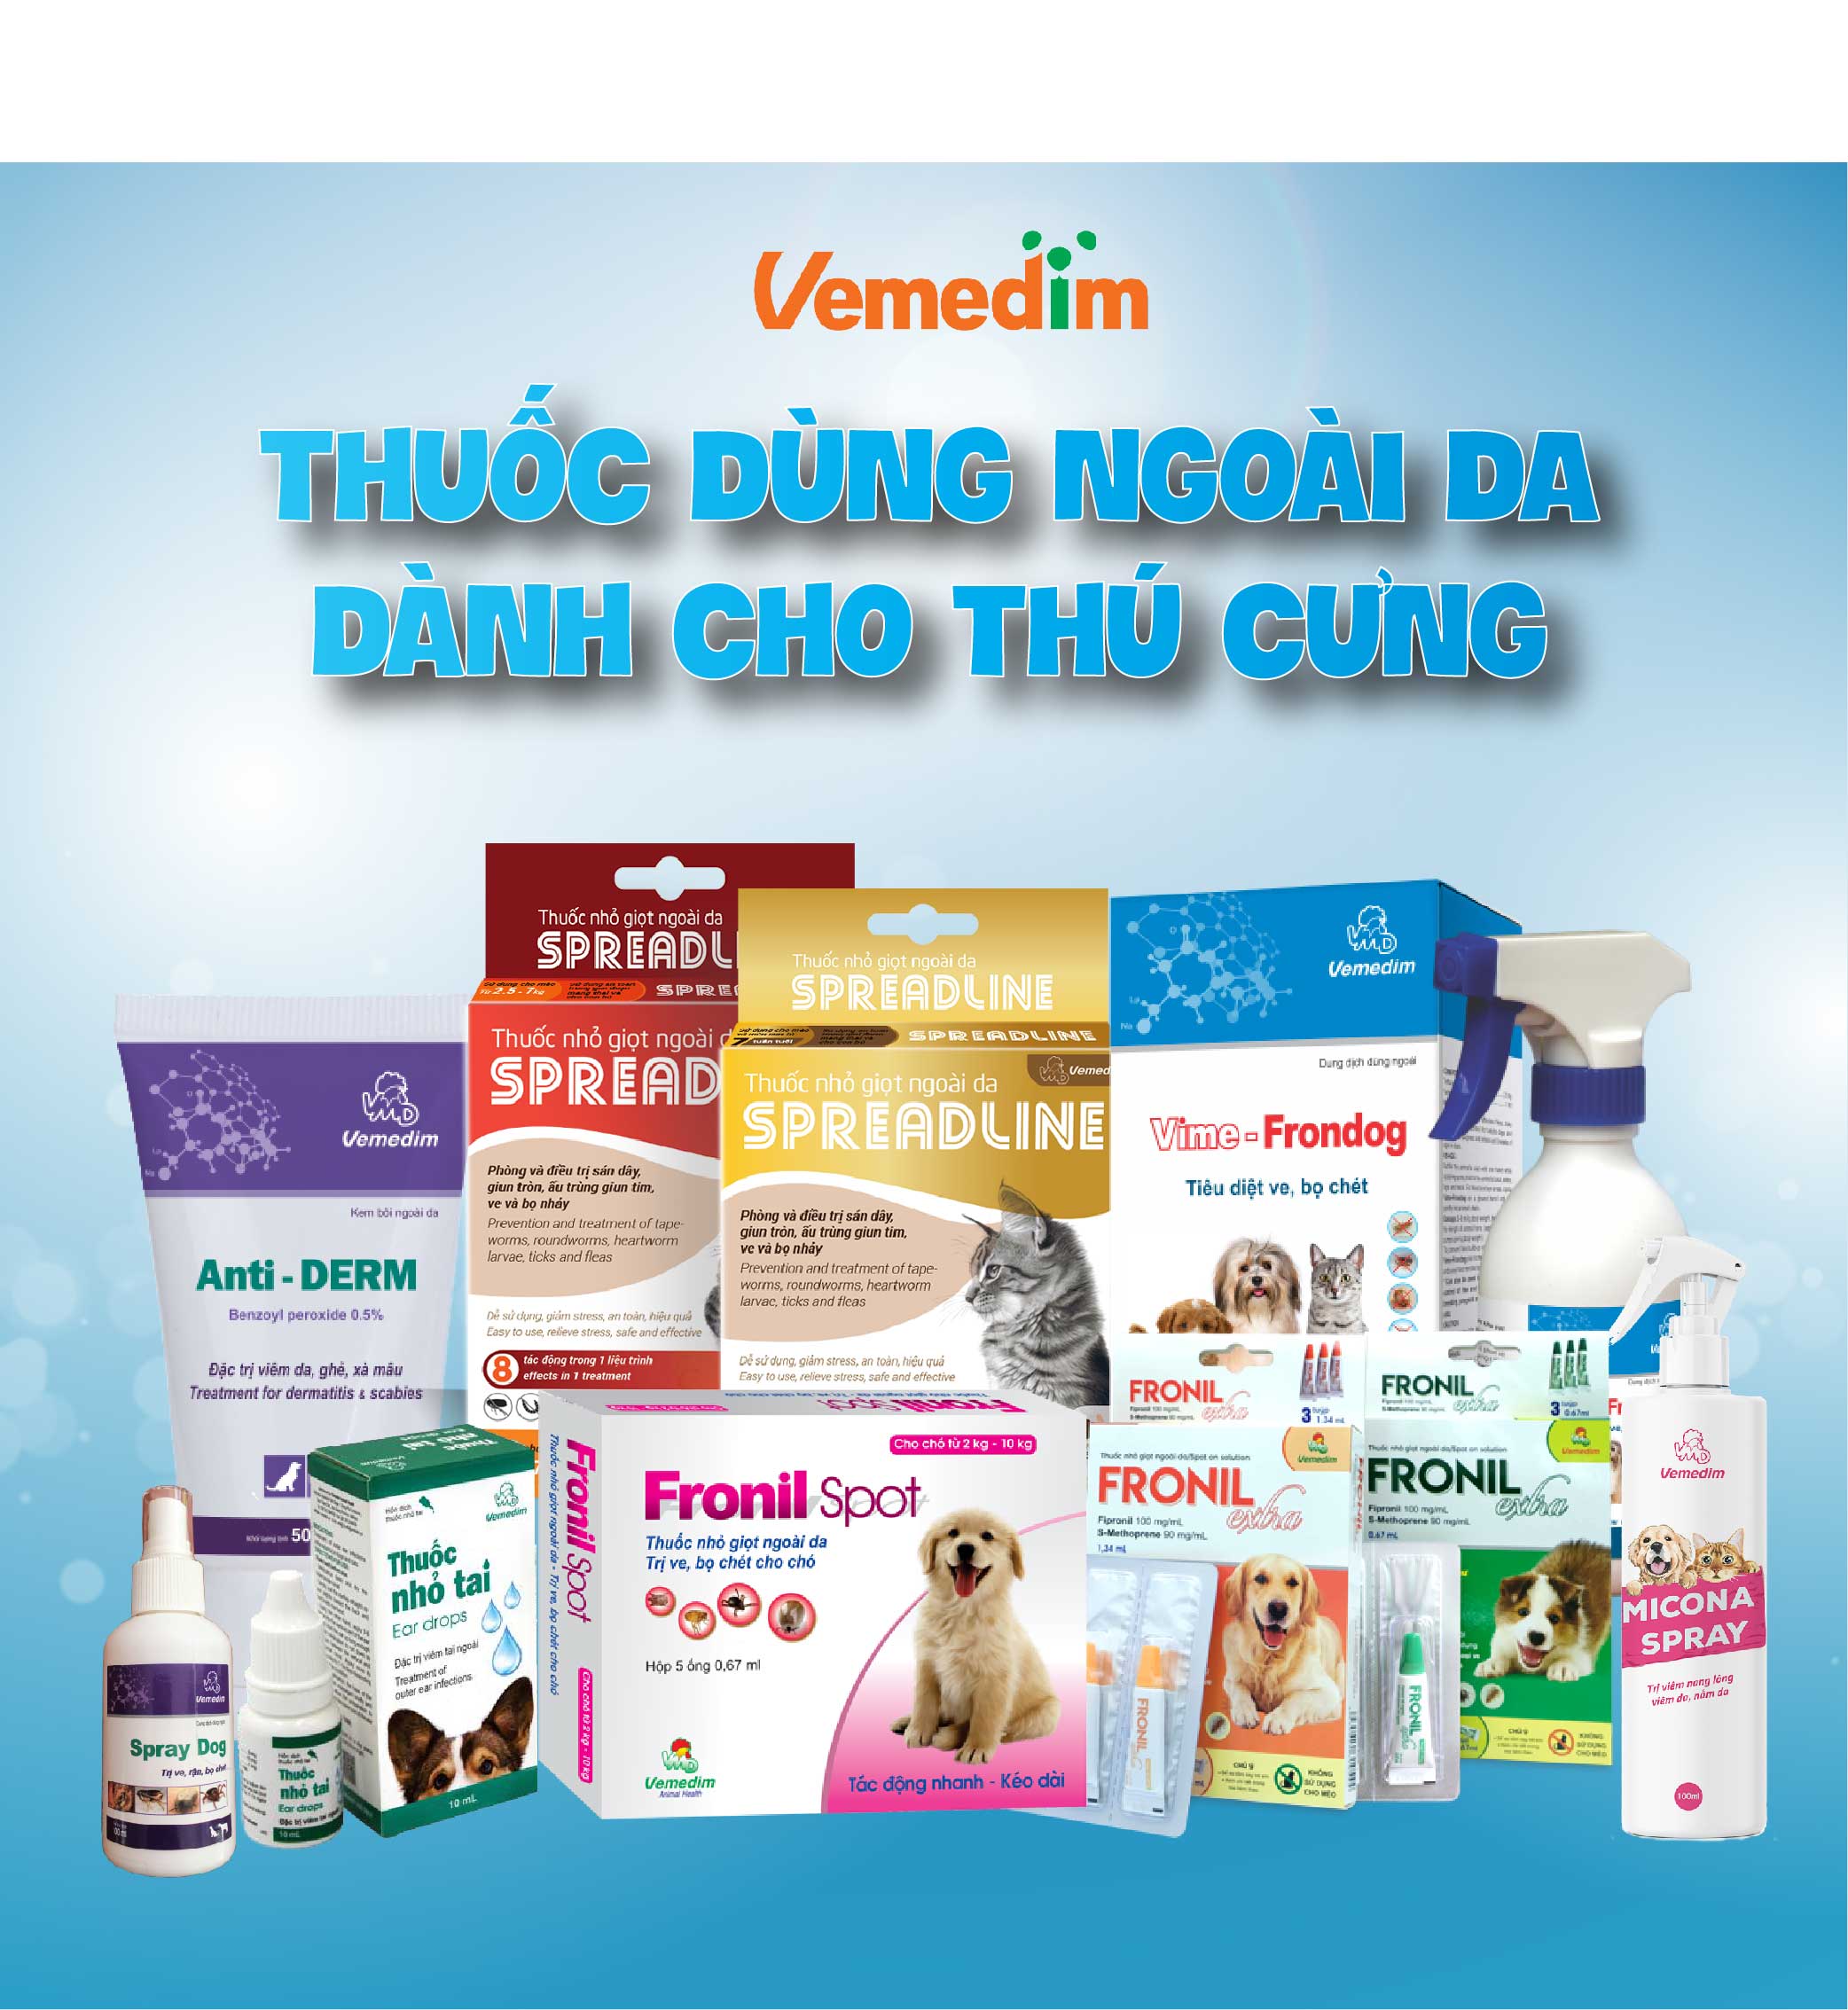 Hình ảnh Vemedim Feline milk sữa bột dành cho mèo con, mèo lớn, mèo đang mang thai và dưỡng bệnh, gói 100g